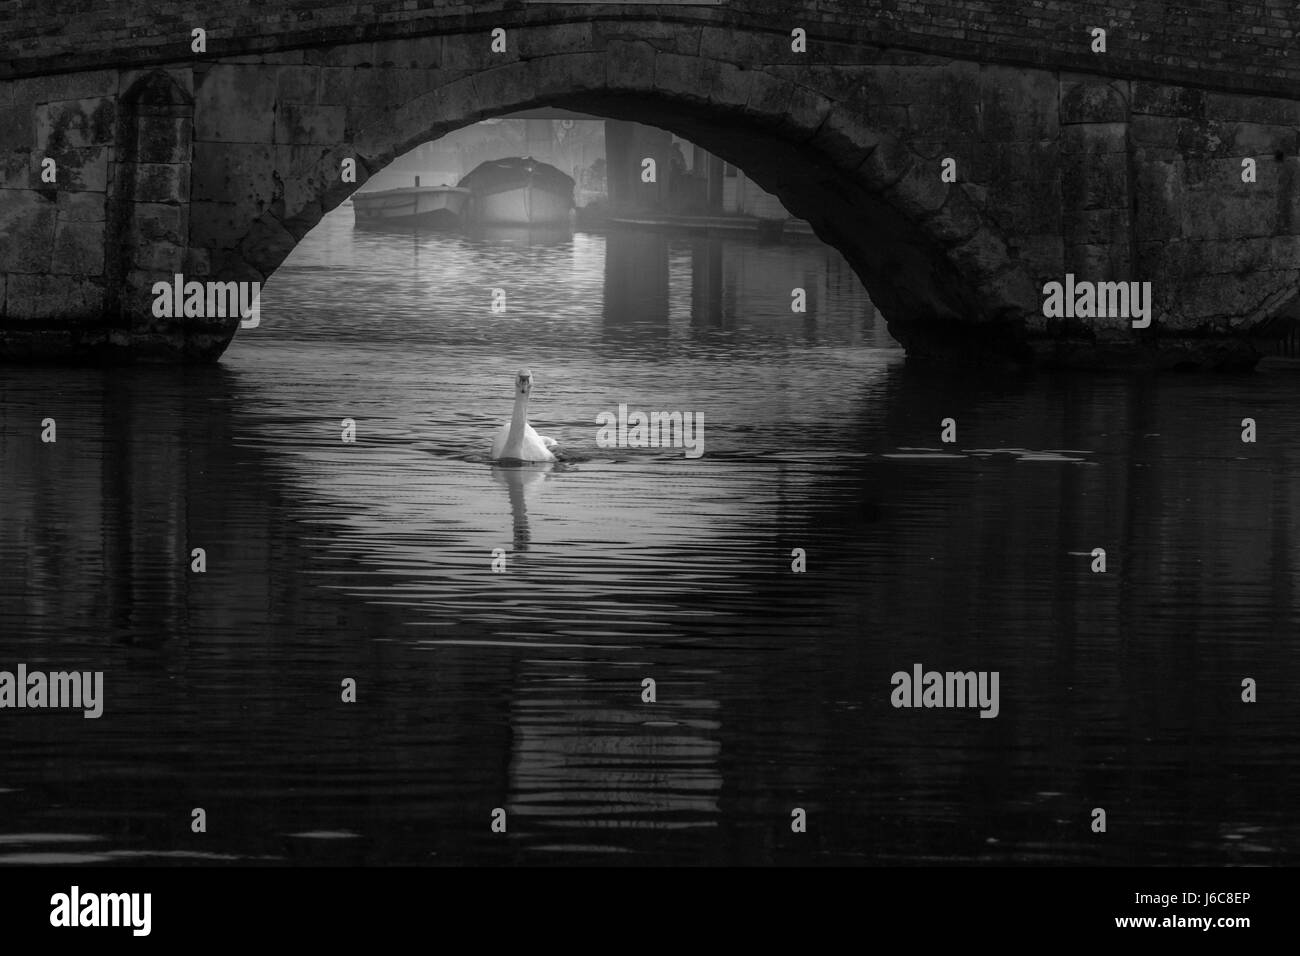 Un singolo swan passando sotto un arco in pietra ponte in bianco e nero con barche in background che aggiunge profondità e sentimento per l'immagine Foto Stock